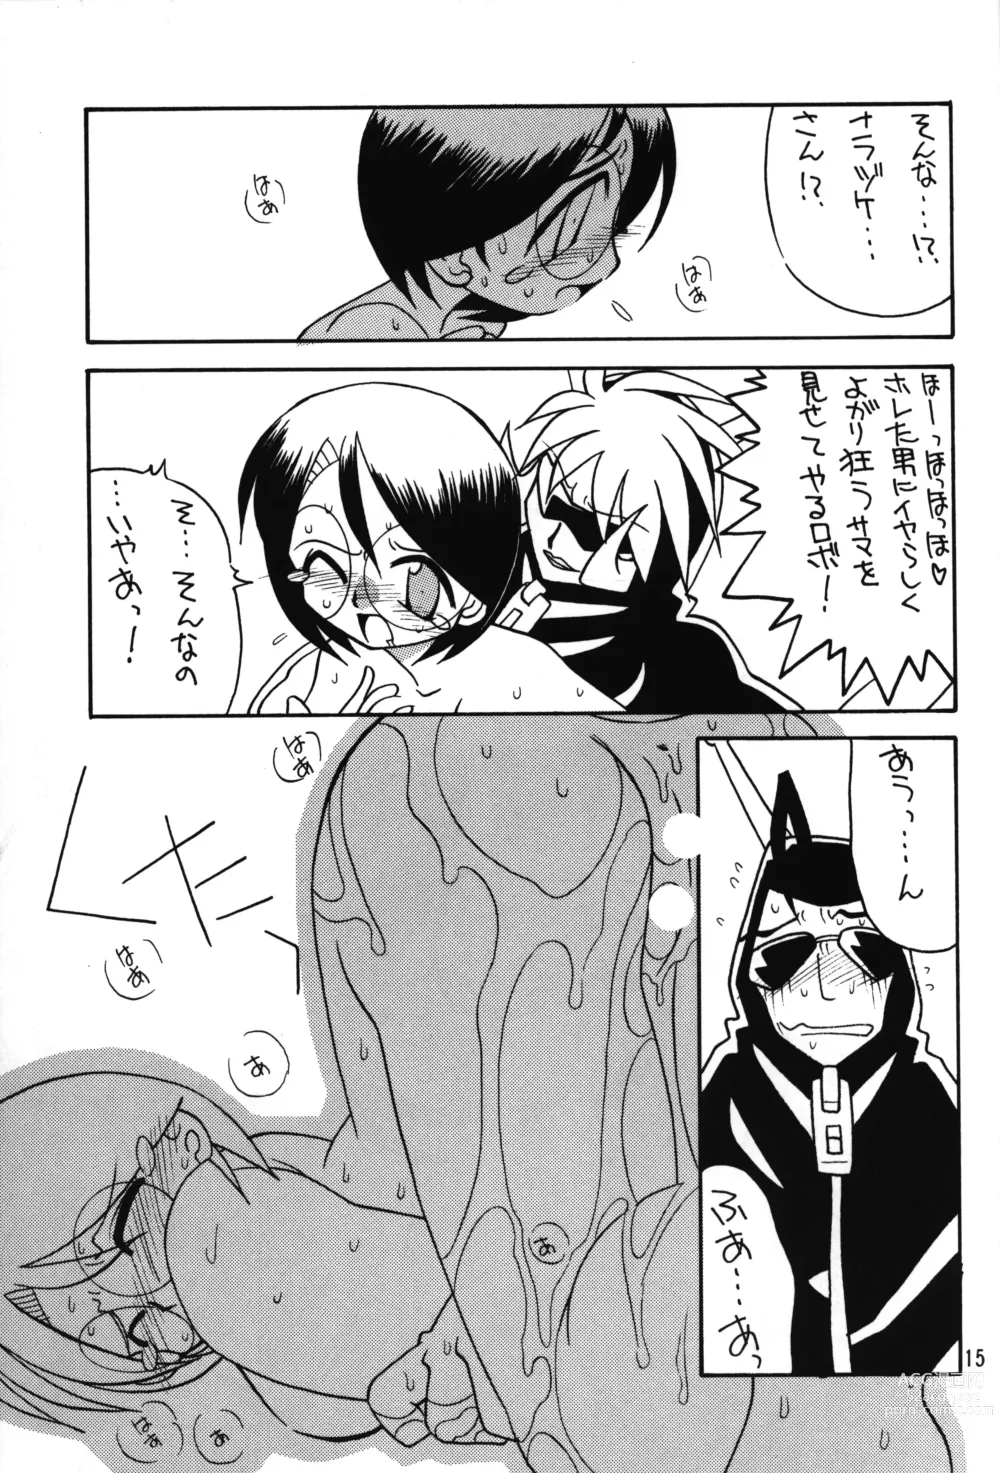 Page 14 of doujinshi Medabot to Tatami Furui Hou ga ii!